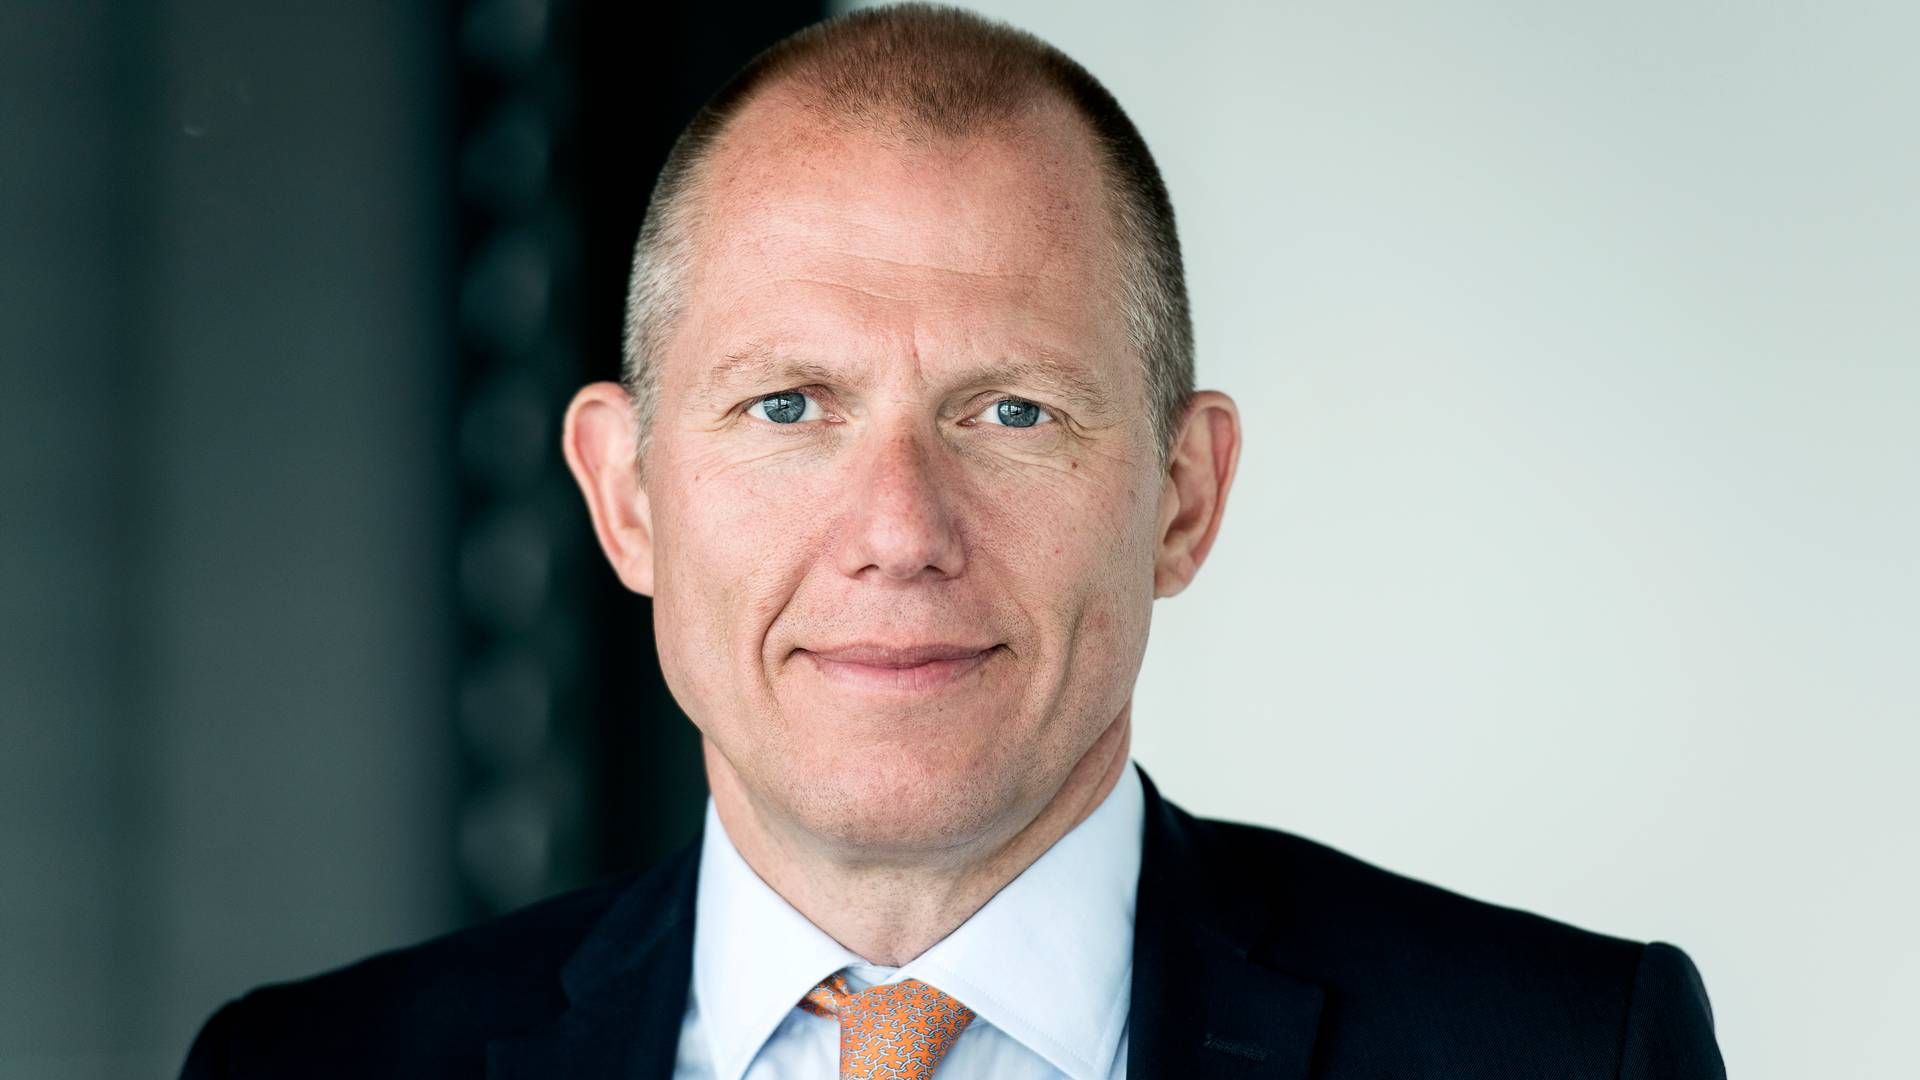 Adm. direktør for logistikselskabet DSV Jens Bjørn Andersen.